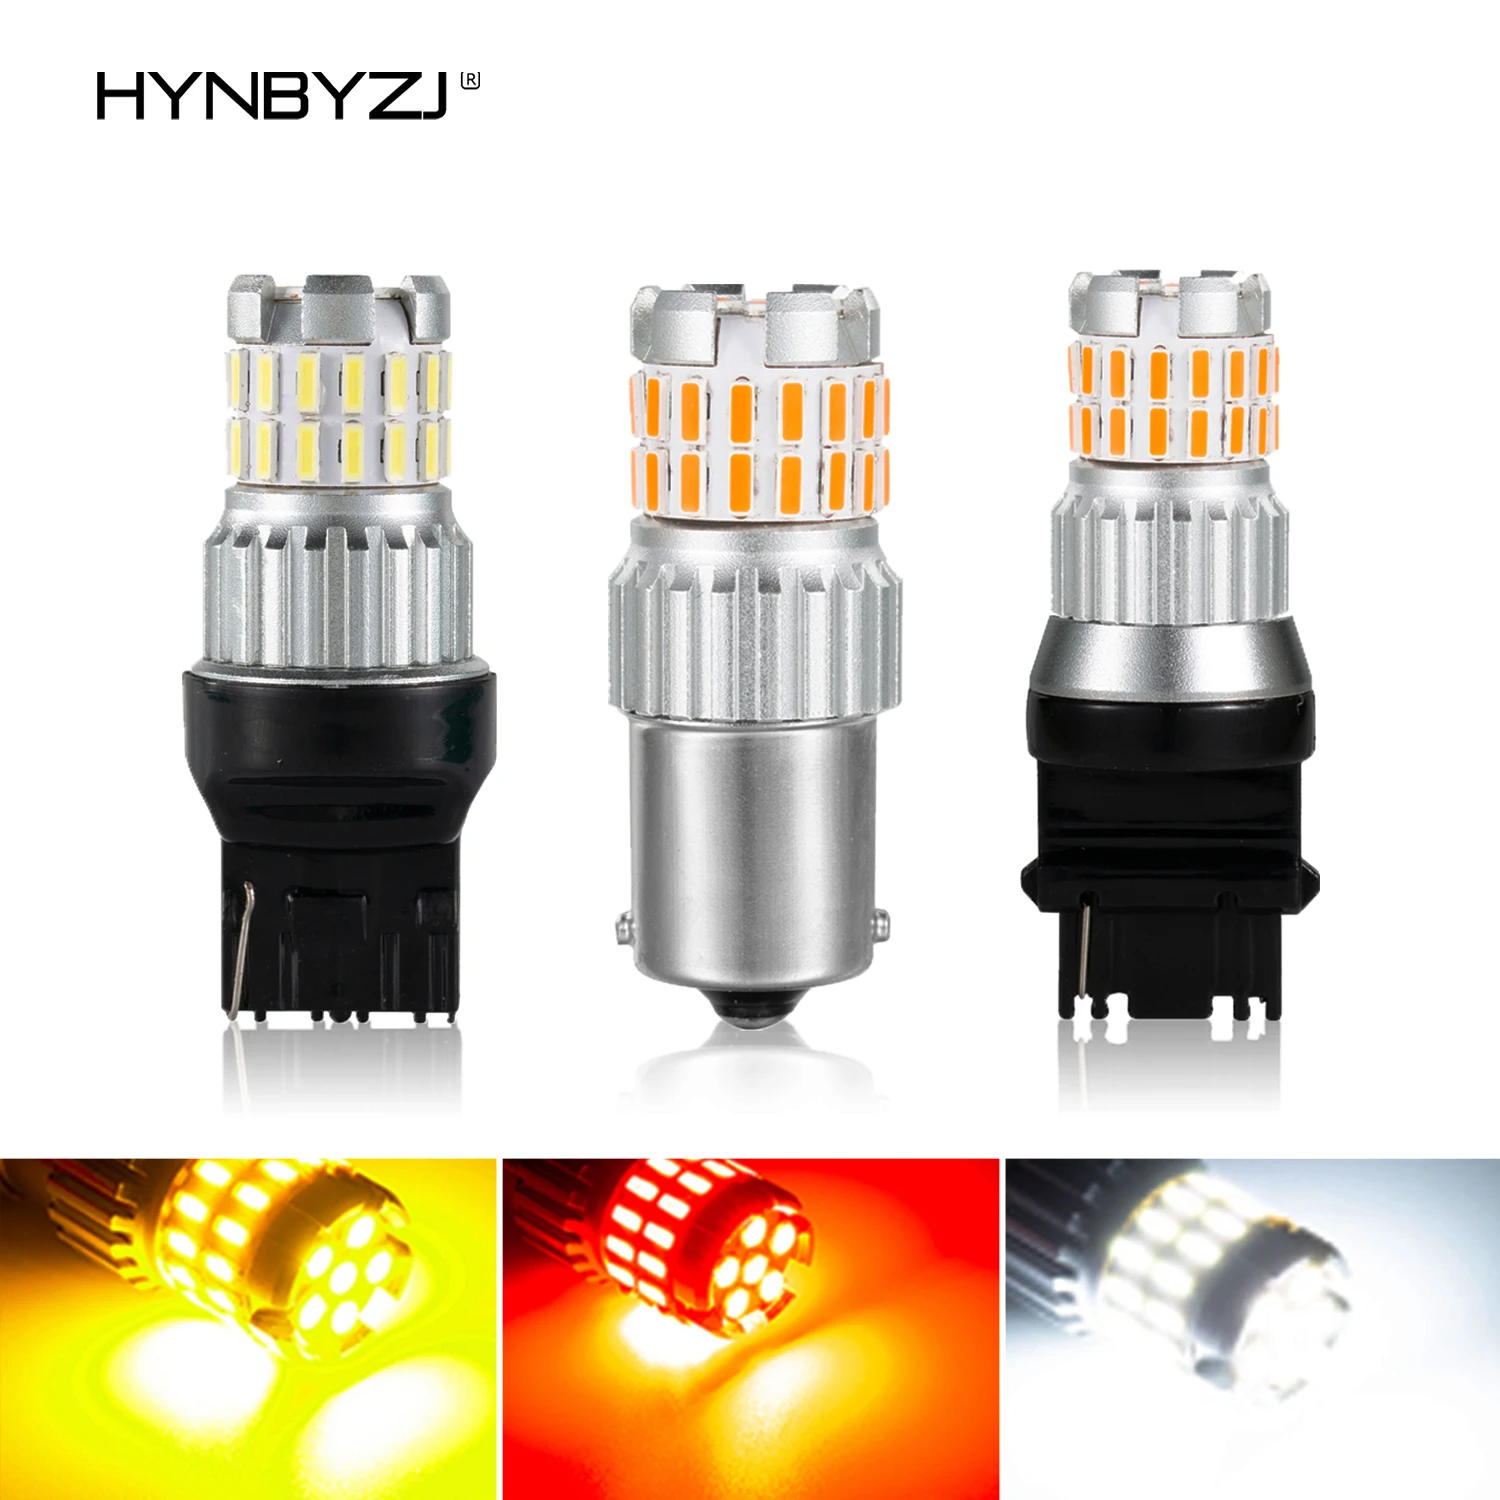 

Светодиодные лампы HYNBYZJ P21W 1156 BA15S Canbus 1157 BAY15D P21/5W 7443 3157, 2 шт., лм, белые, желтые, красные, стоп-сигналы, лампа заднего хода DRL